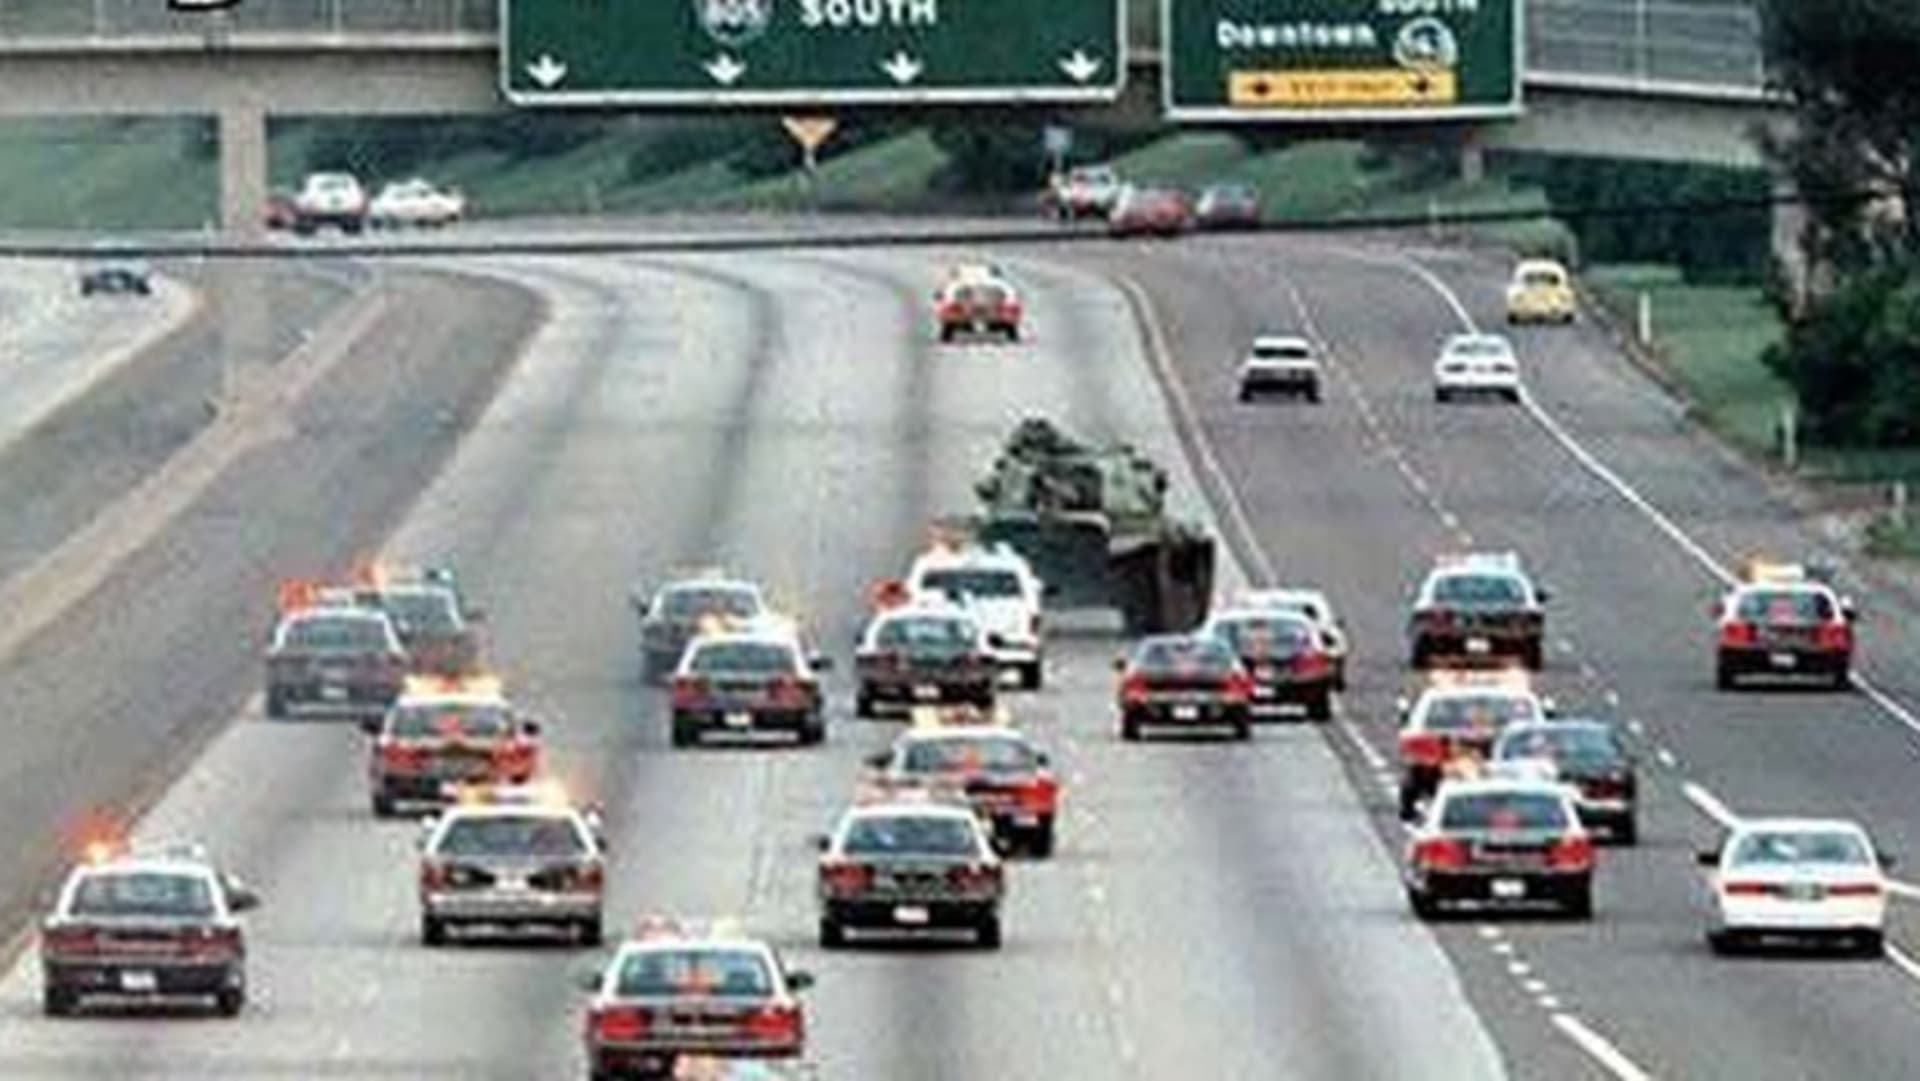 Pronásledování ukradeného tanku, San Diego, 1995